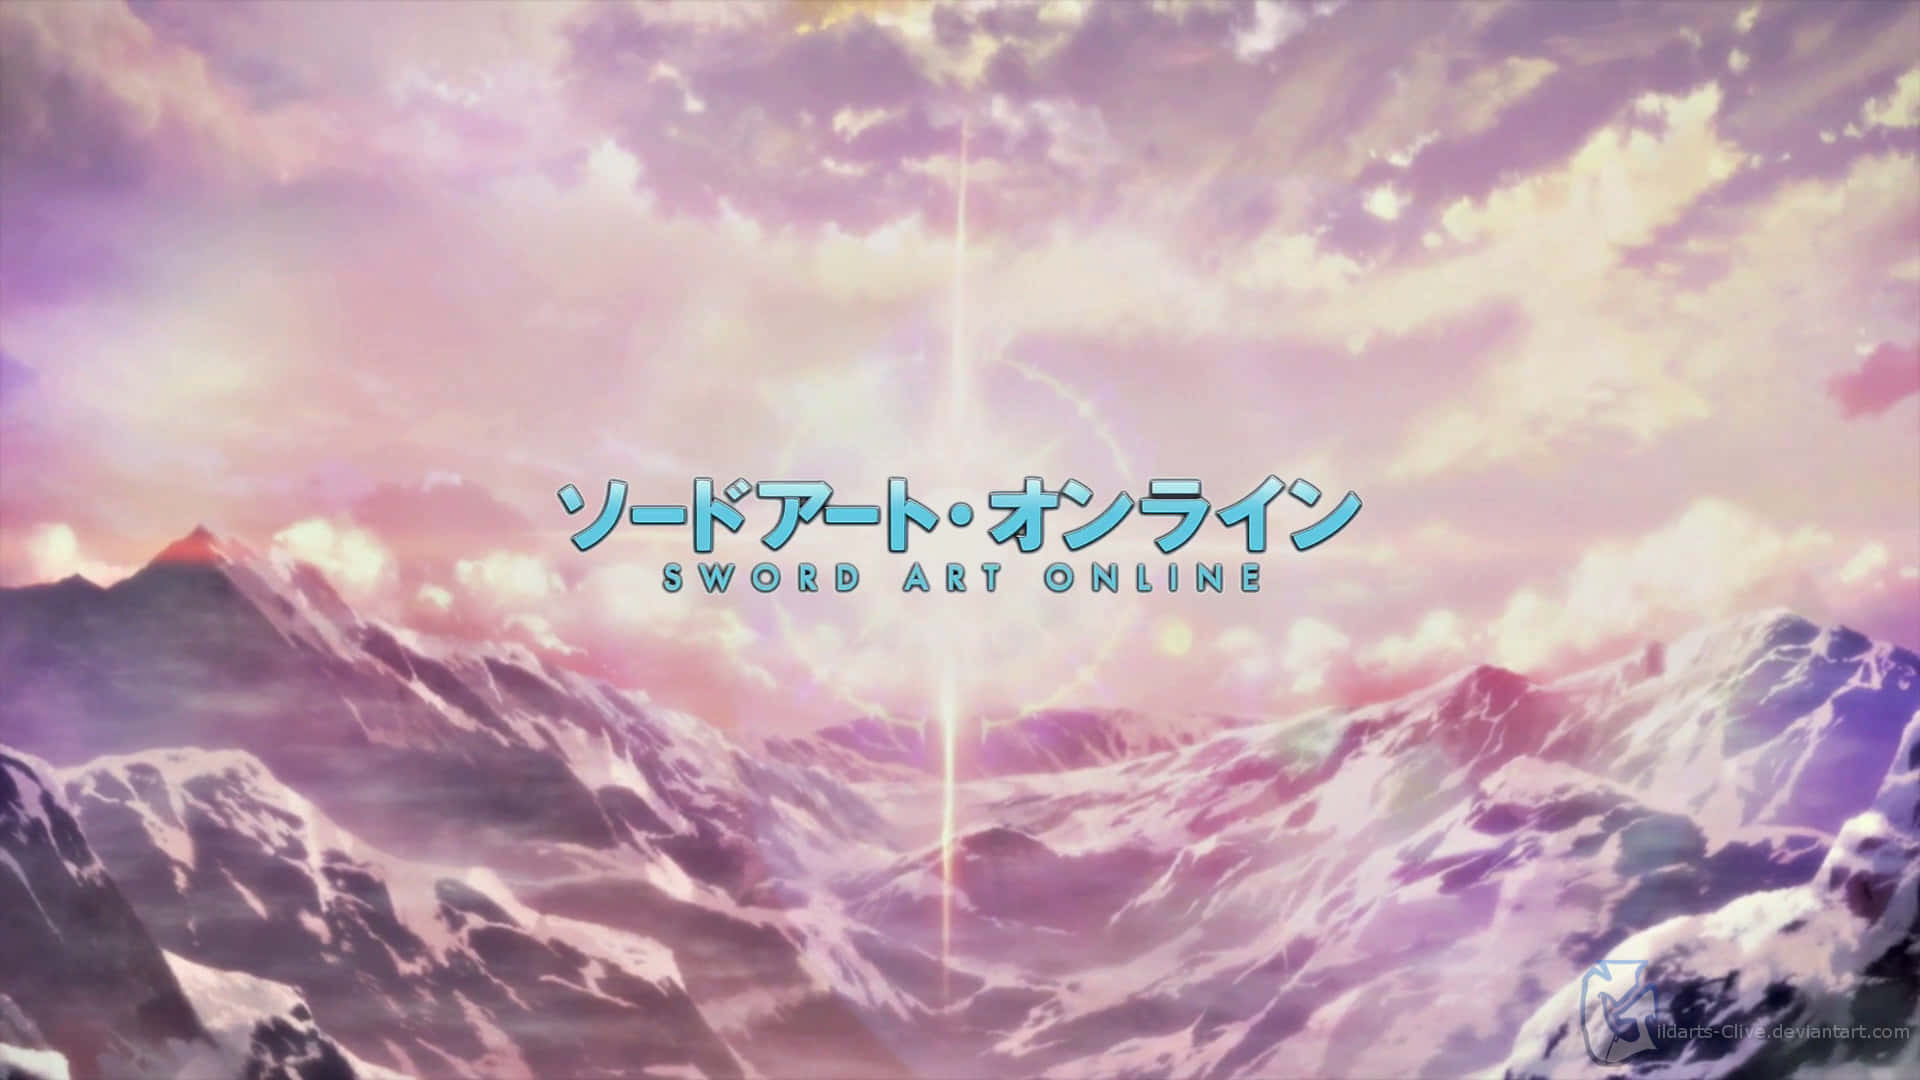 Escenade Apertura De Sword Art Online En Estilo Sutil De Anime Fondo de pantalla